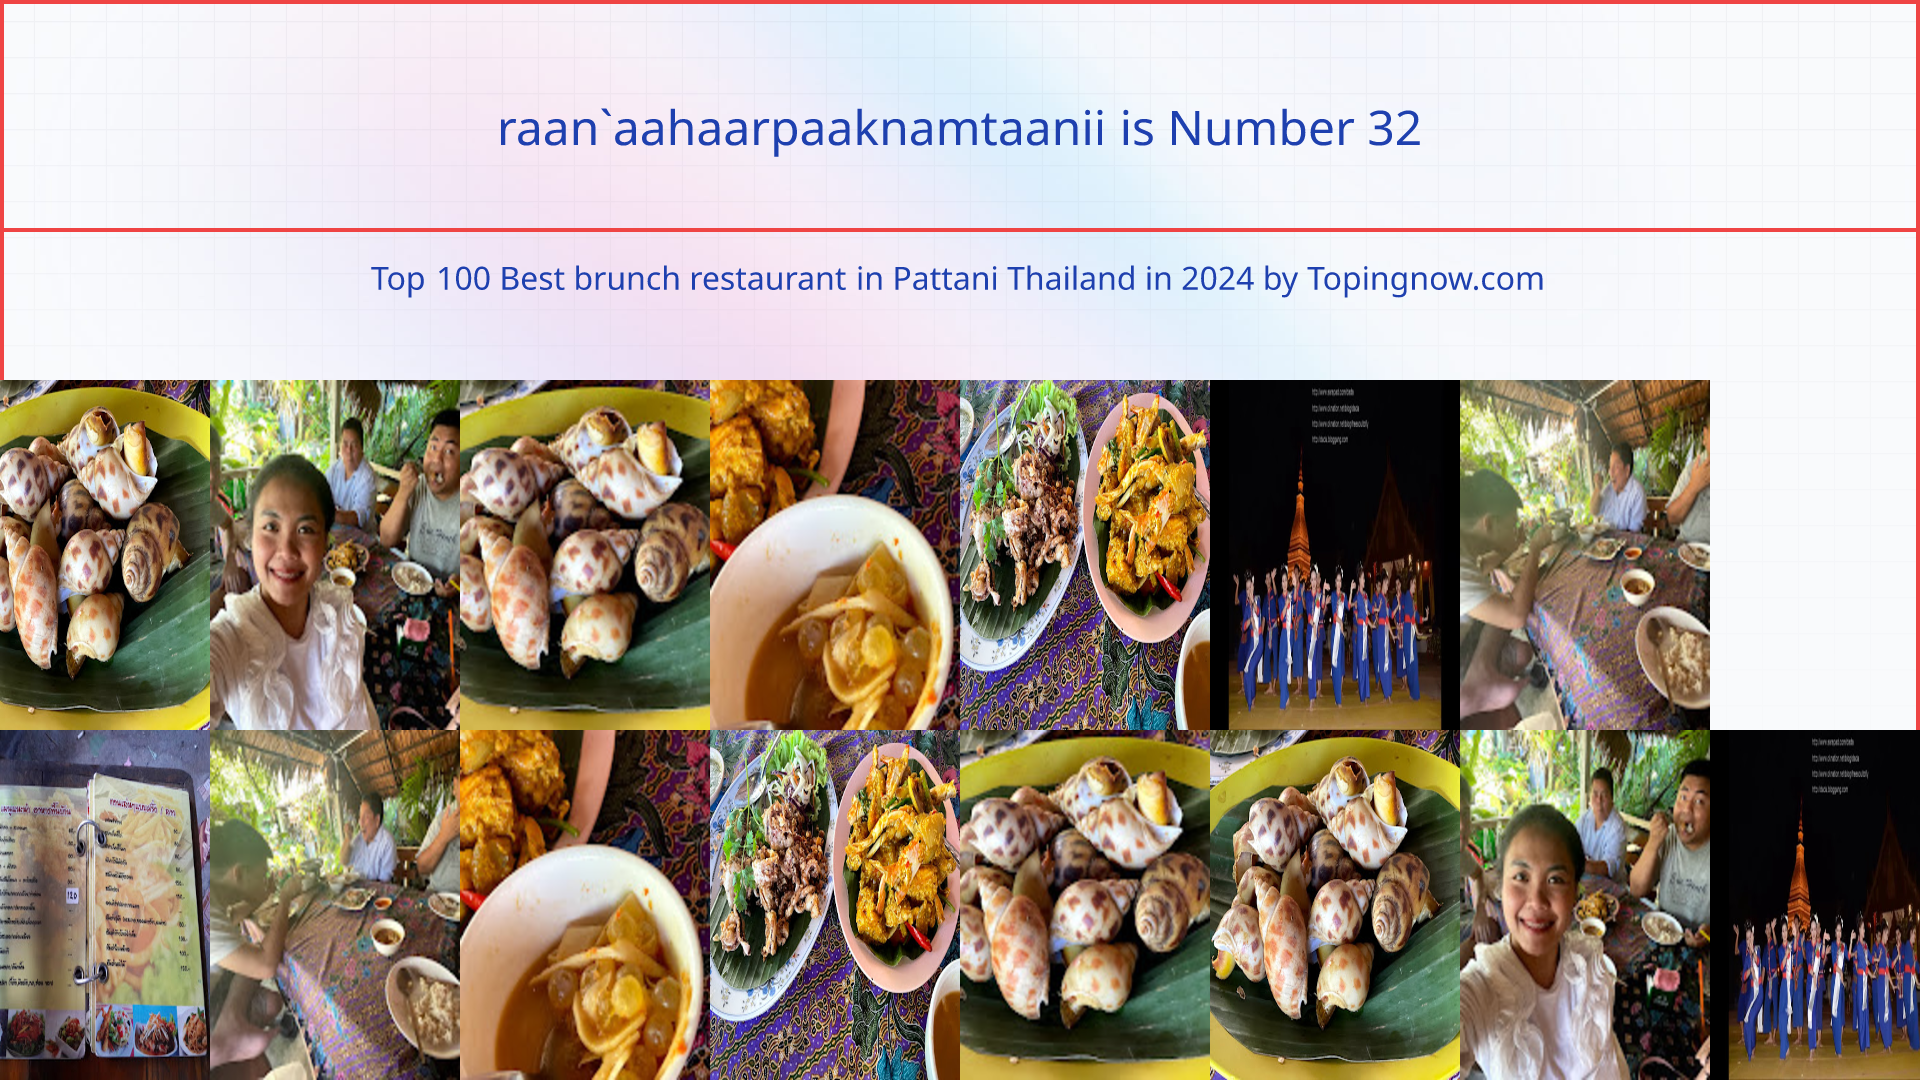 raan`aahaarpaaknamtaanii: Top 100 Best brunch restaurant in Pattani Thailand in 2024